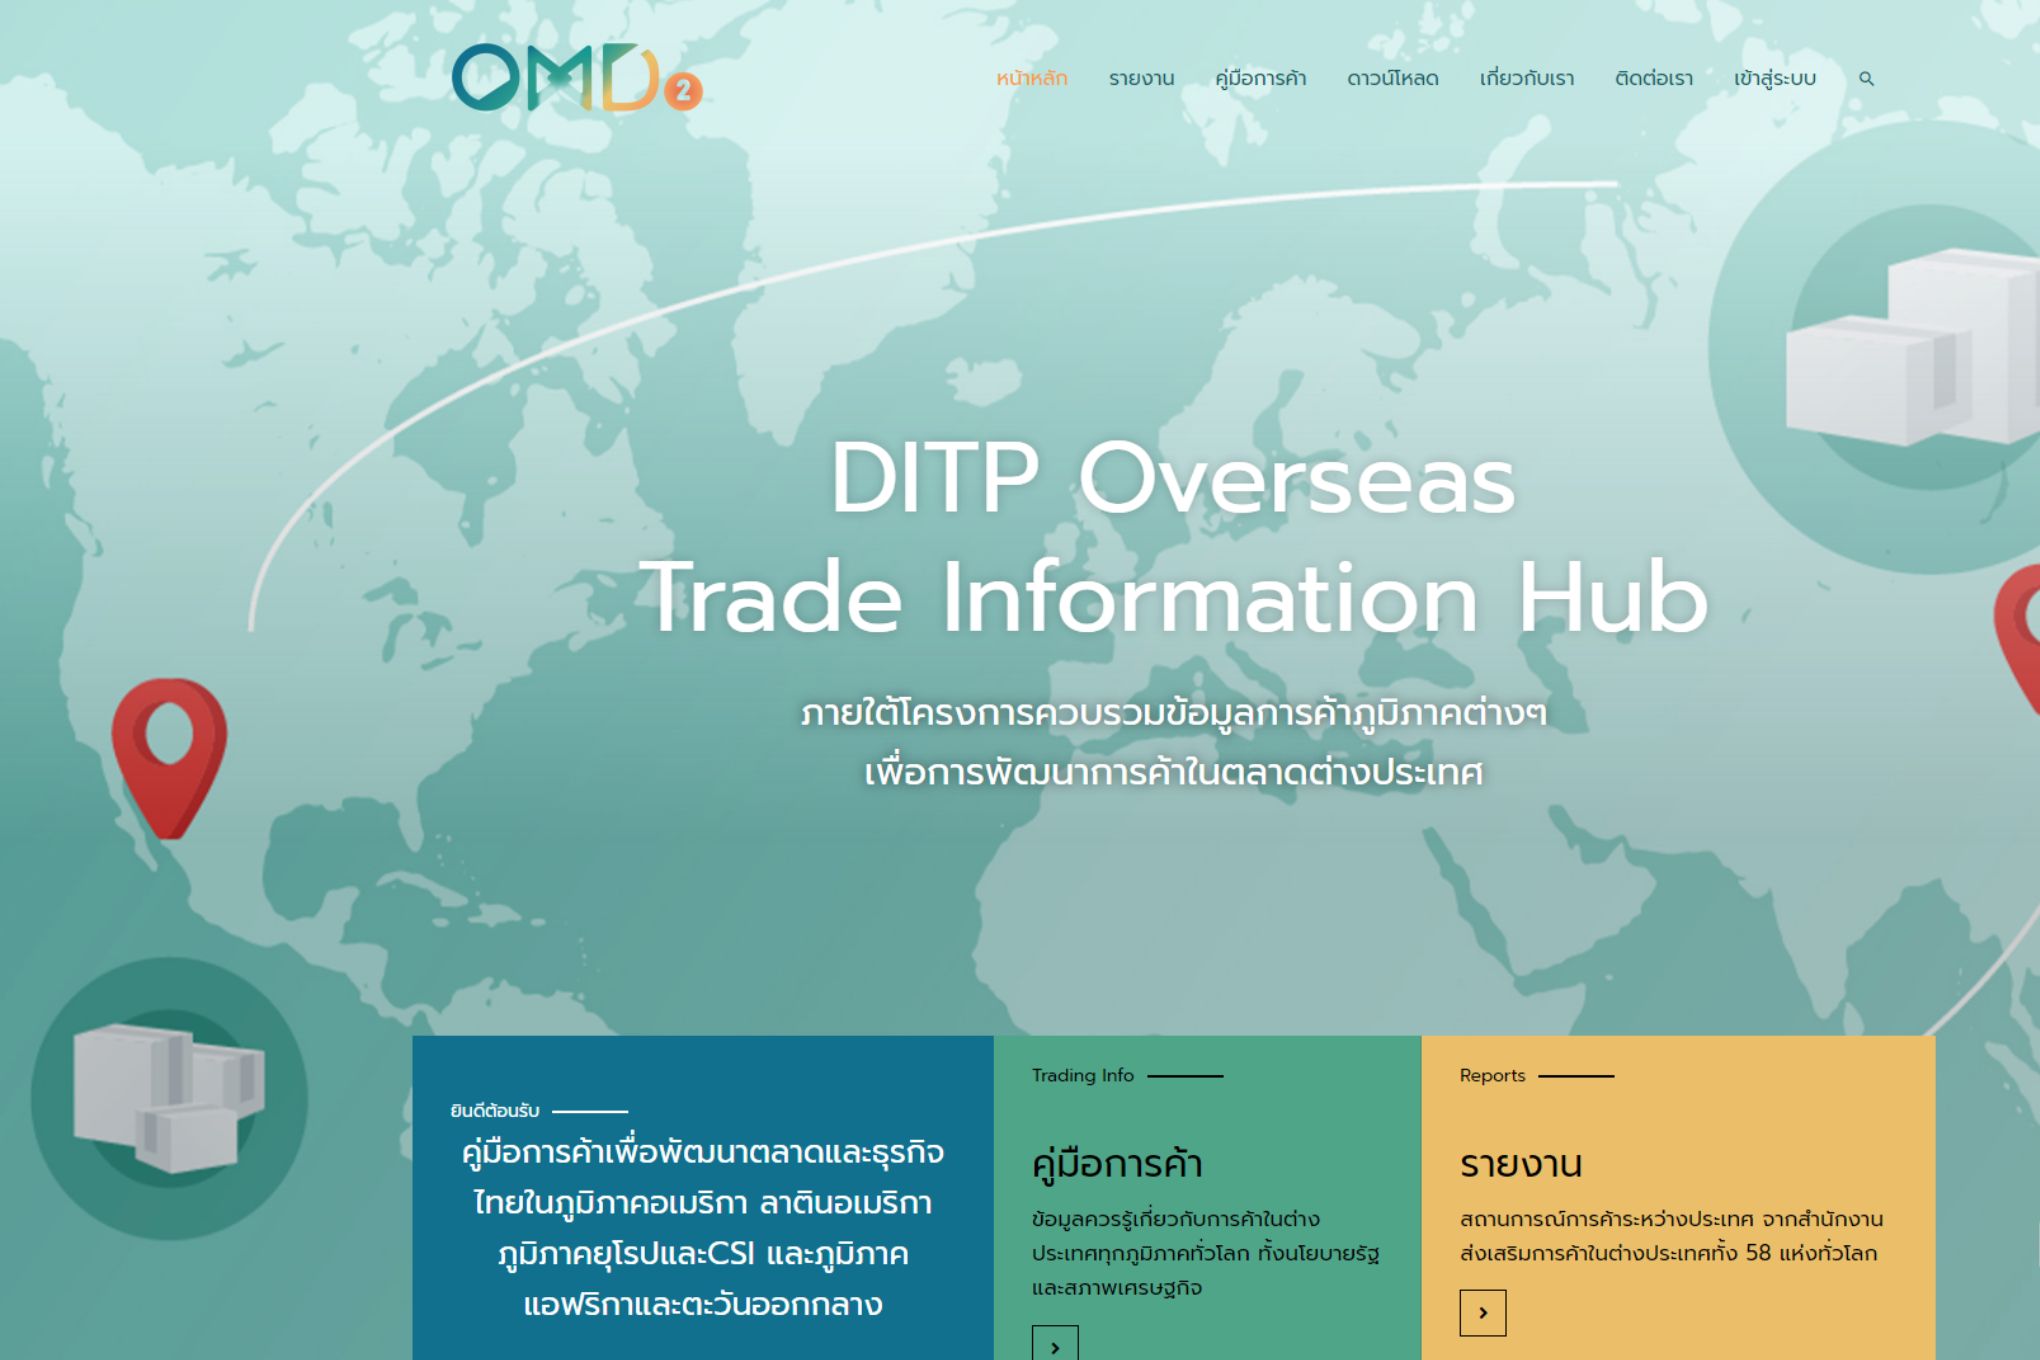 DITP แนะช่องทางเสริมแกร่งธุรกิจ ช่วยพัฒนาศักยภาพการส่งออกออนไลน์